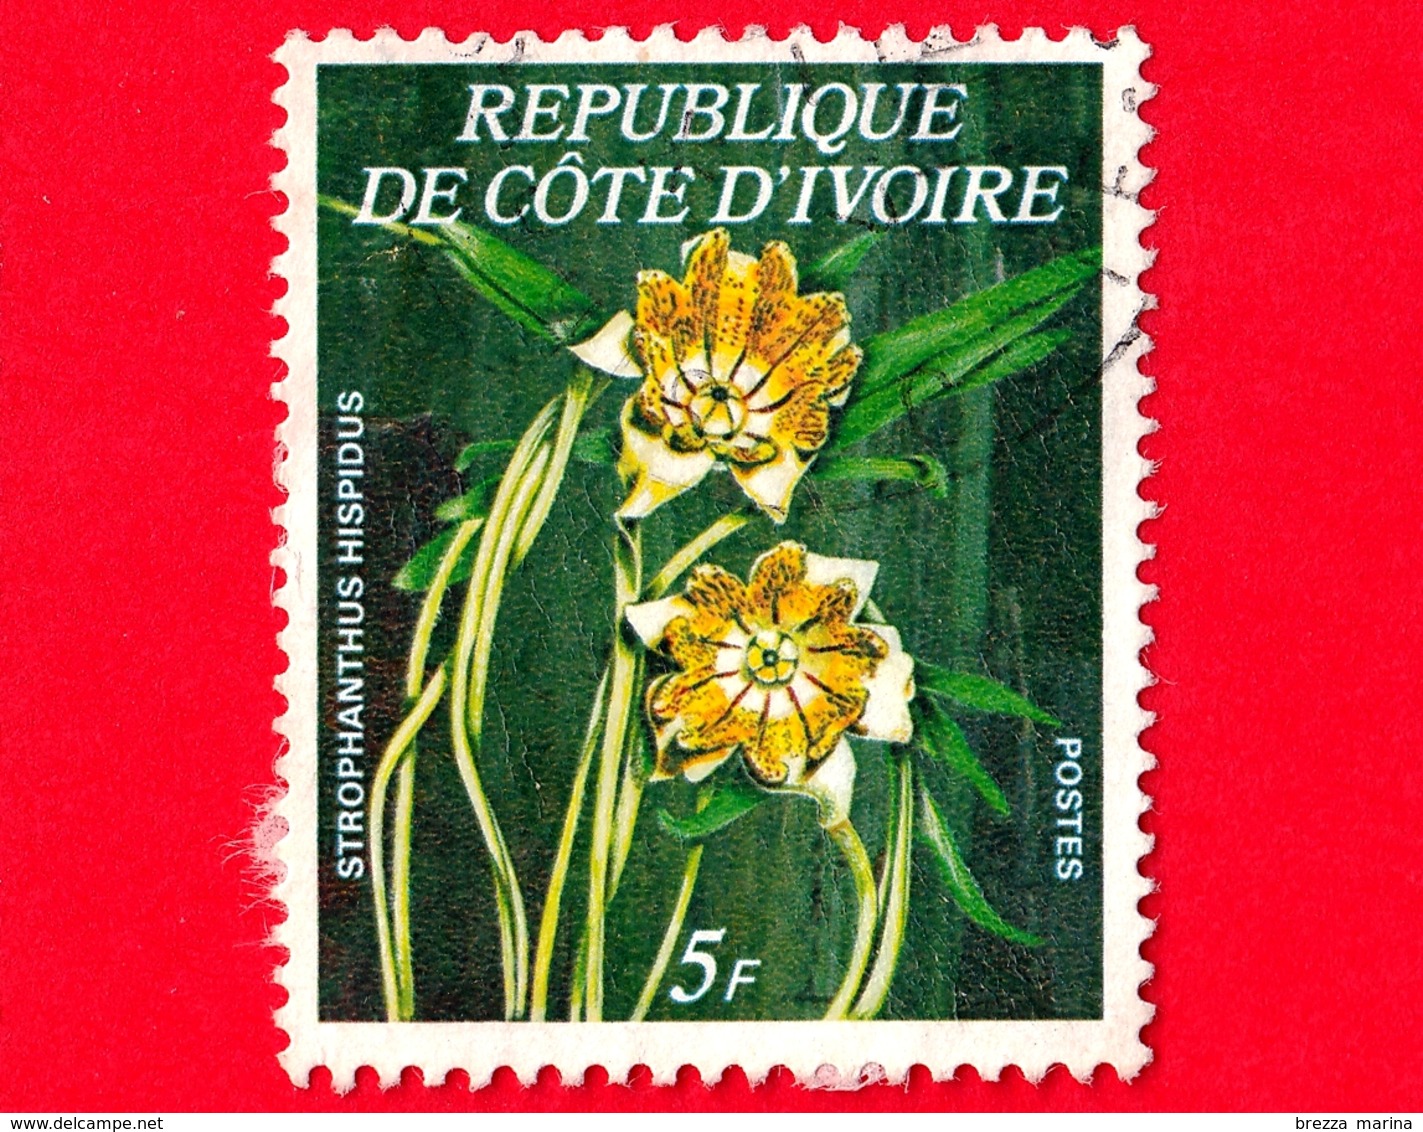 COSTA D'AVORIO - Usato - 1977 - Fiori - Strophanthus Hispidus - 5 - Costa D'Avorio (1960-...)